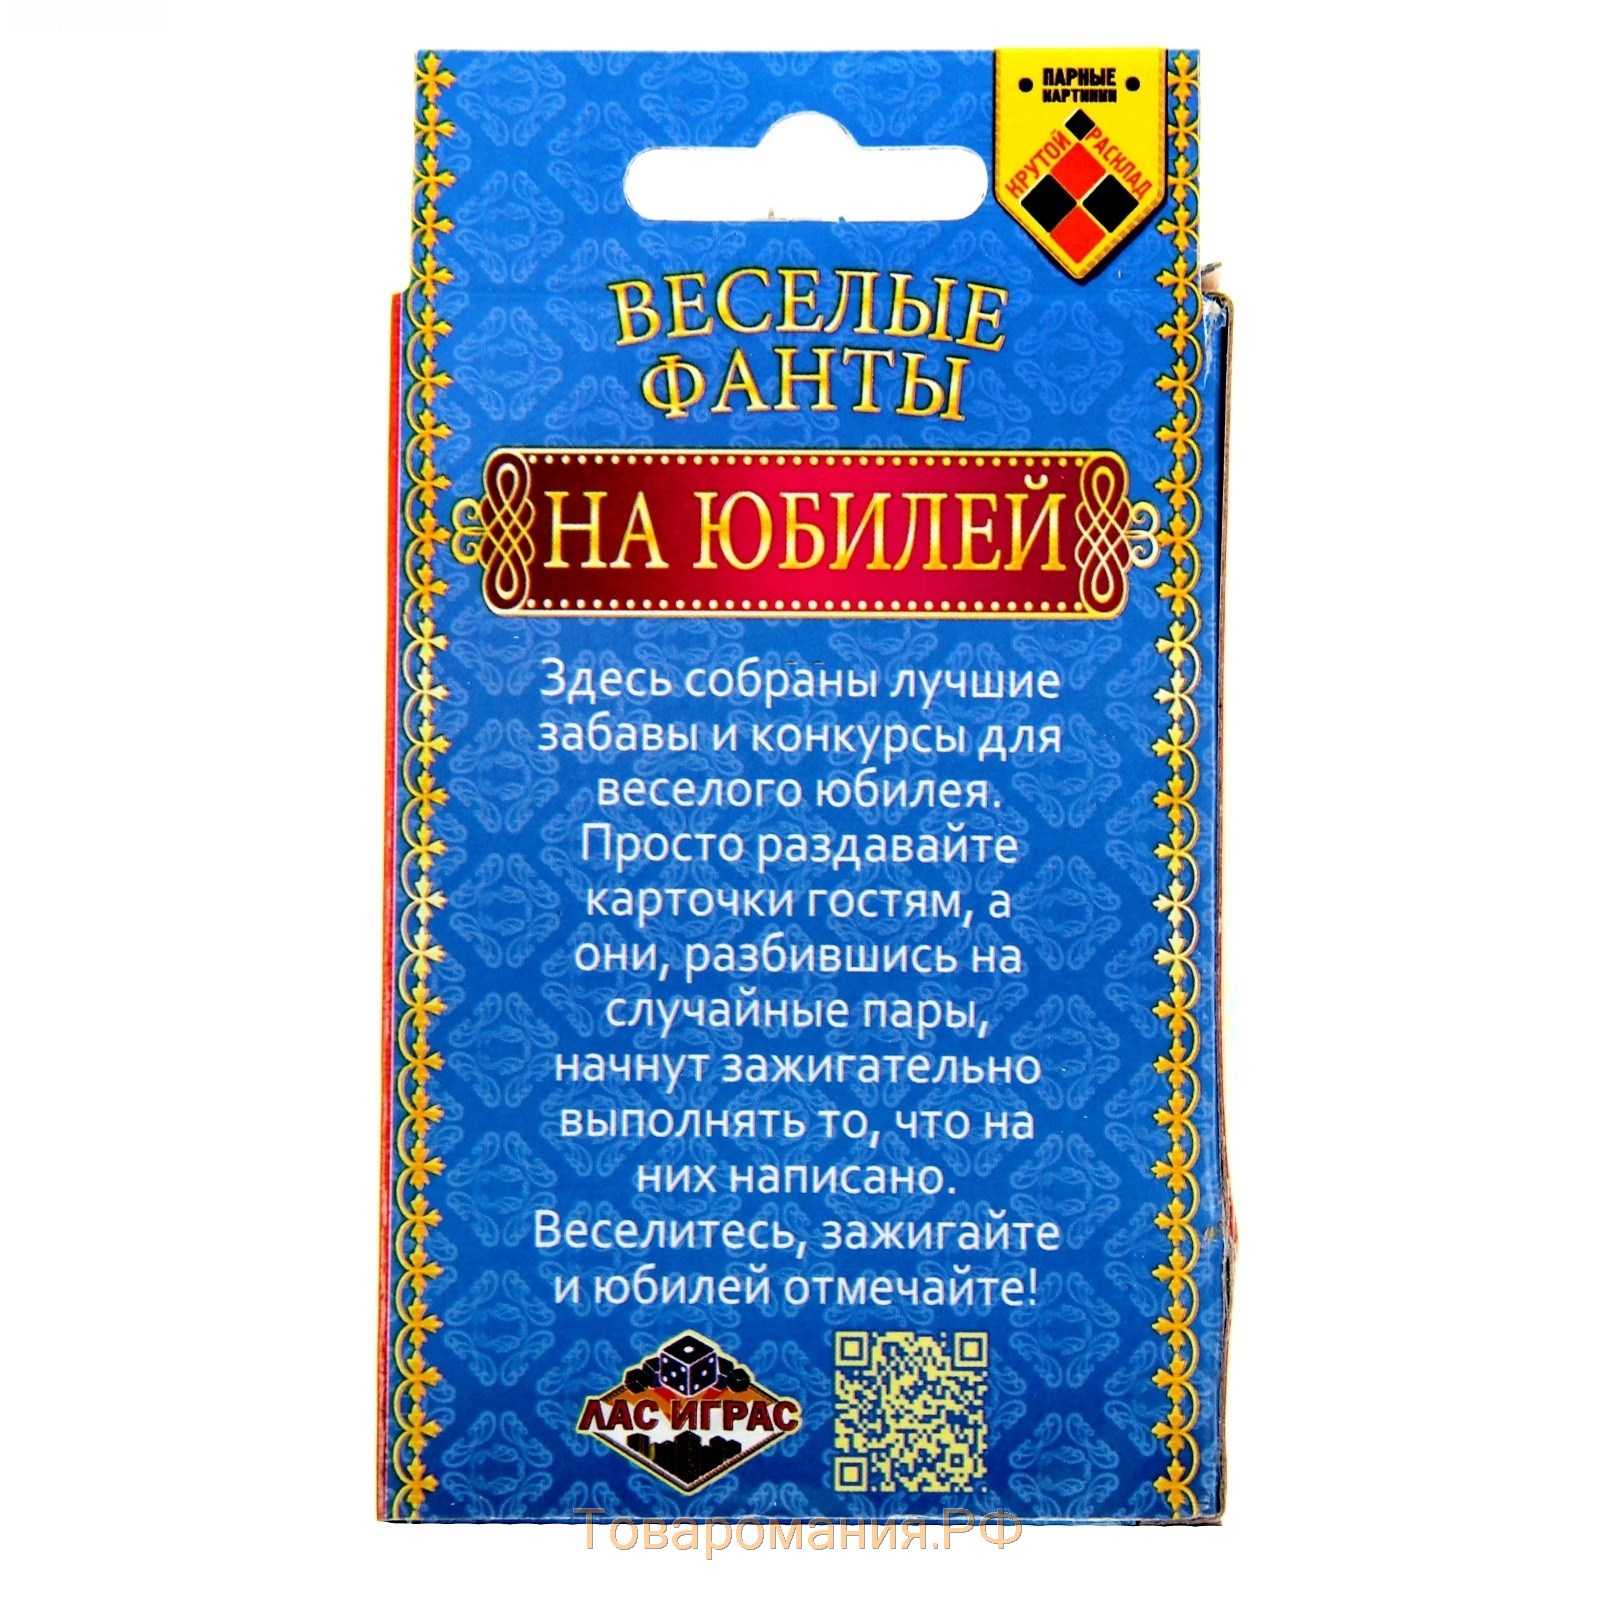 Серпантин идей - кавказский тост украсит русский юбилей, если… // тост притча на русских праздниках более развлекательный по подаче и содержанию